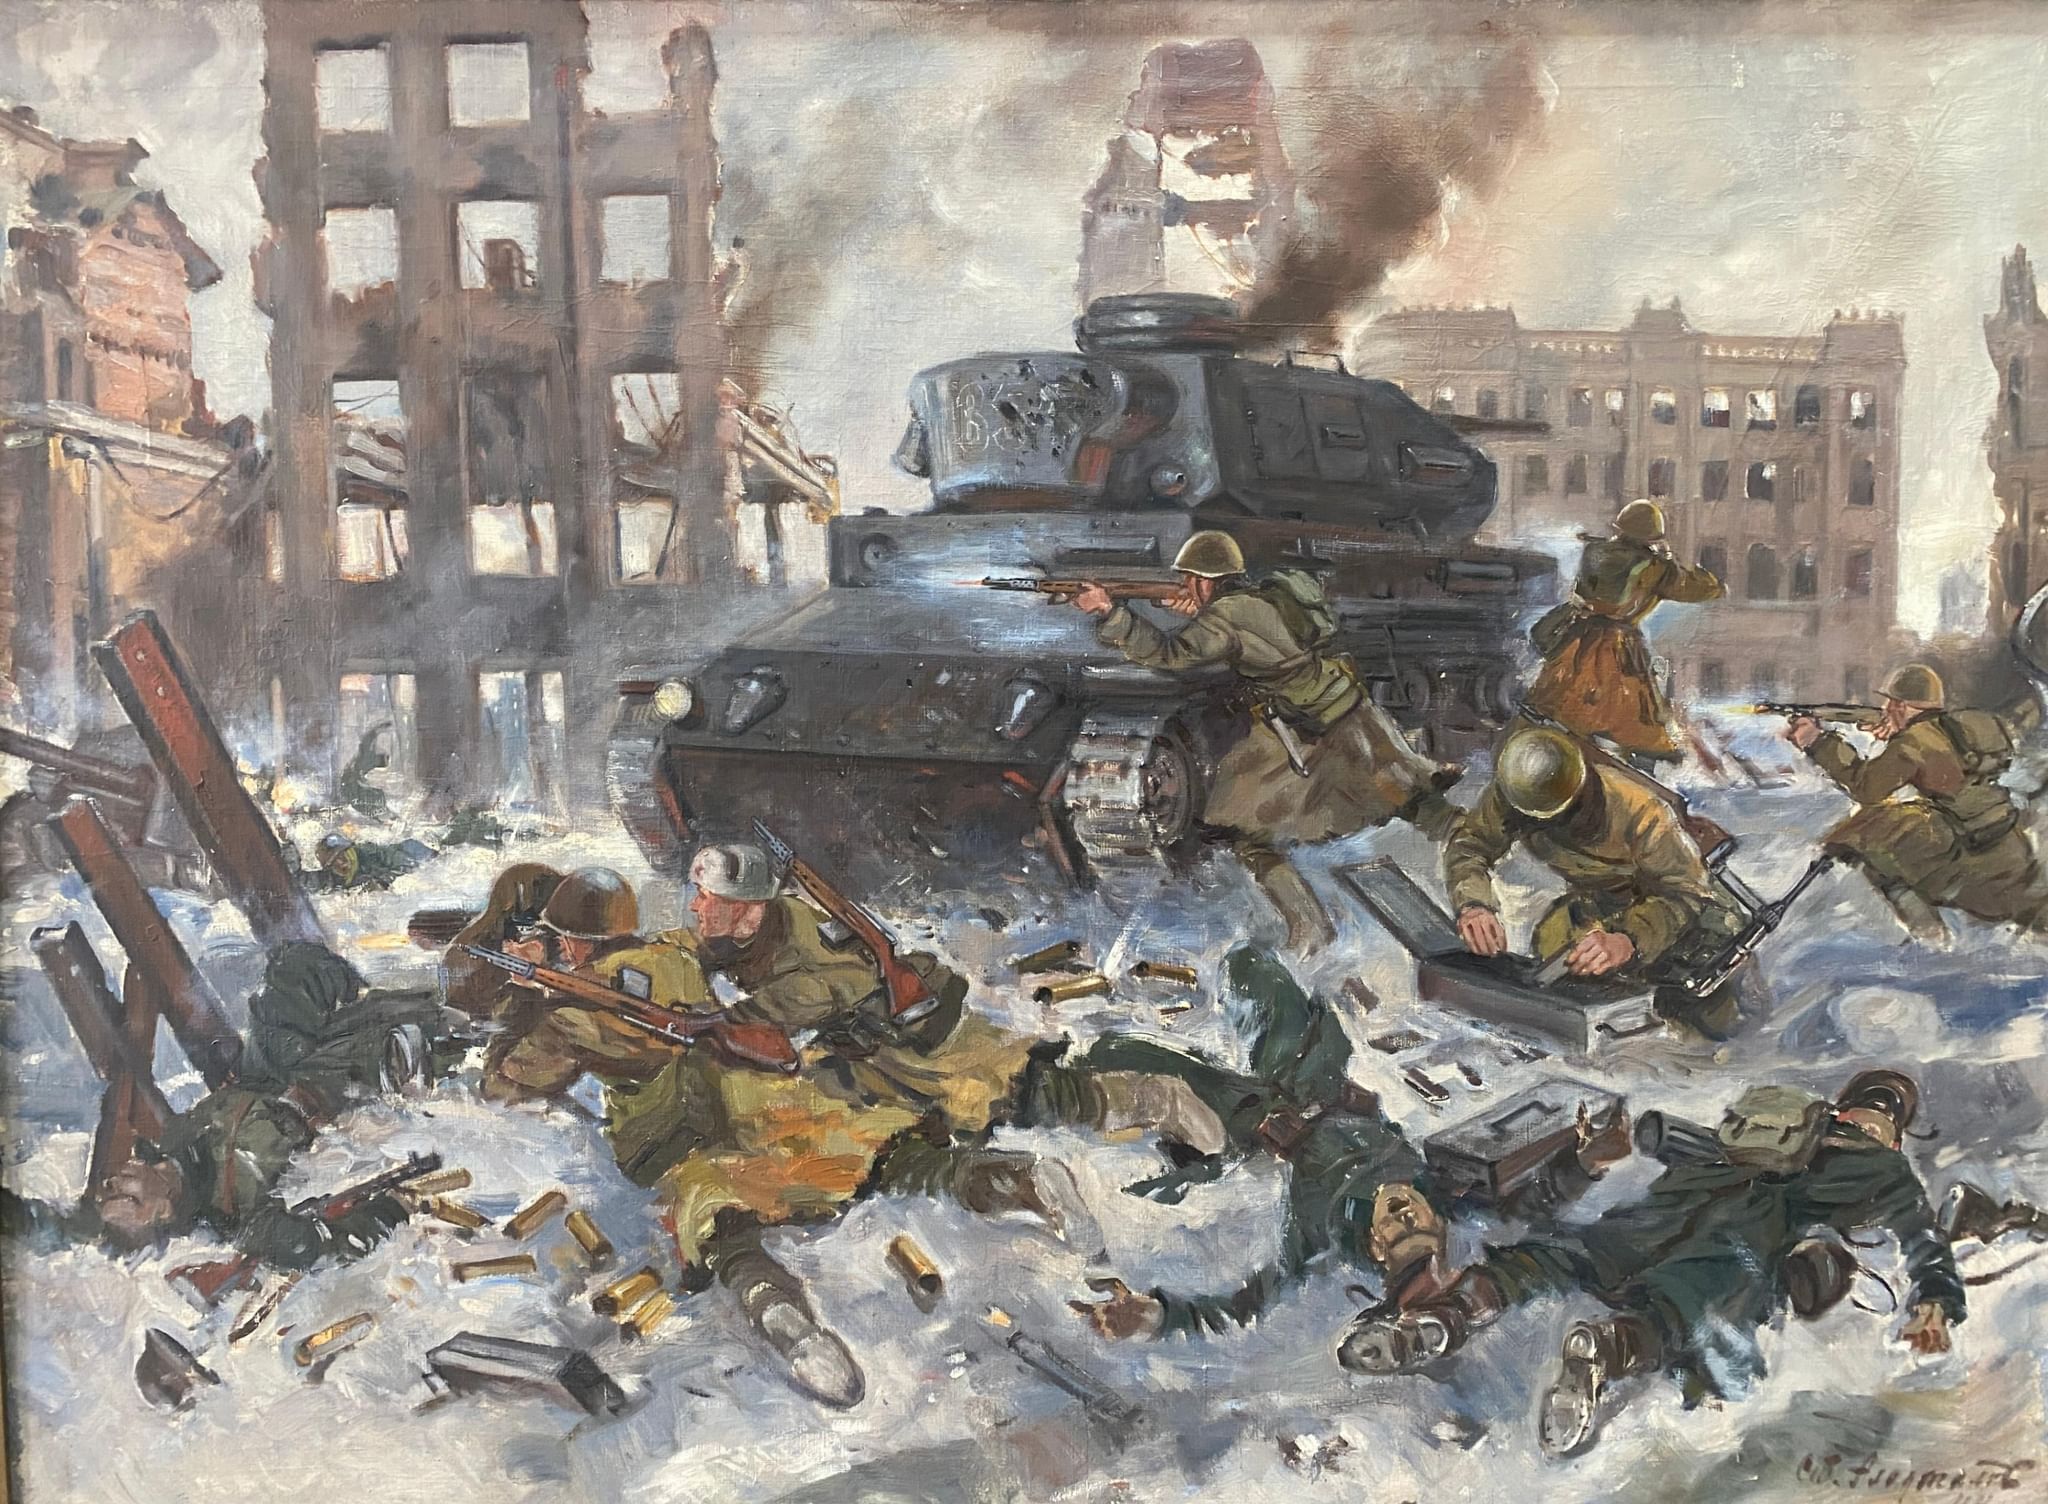 Советские произведения о войне